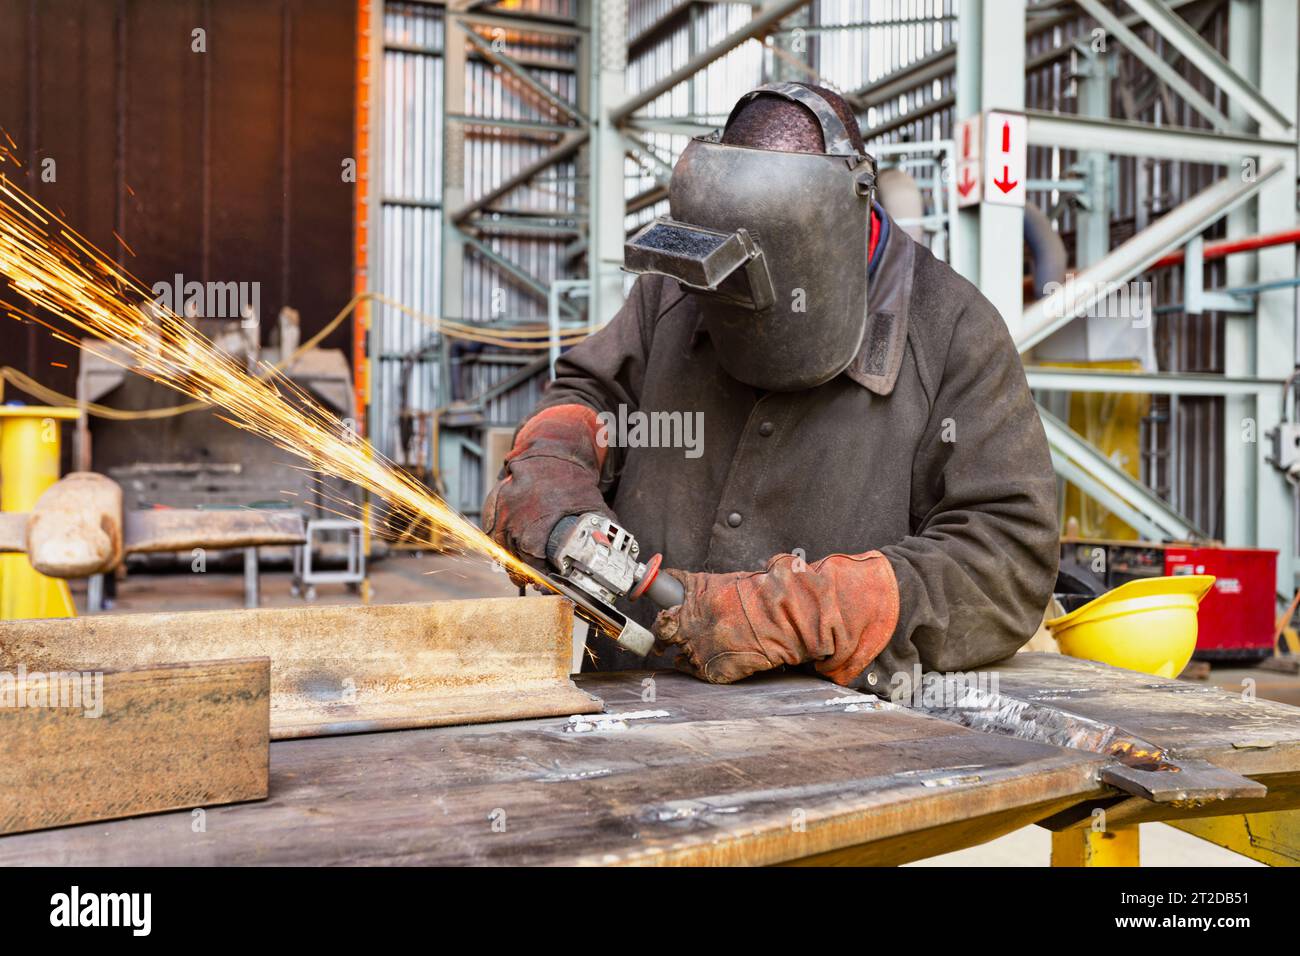 afrikanischer Mann in der Fabrik, der eine Maske trägt und mit einem Schleifer arbeitet, Funken fliegen Stockfoto